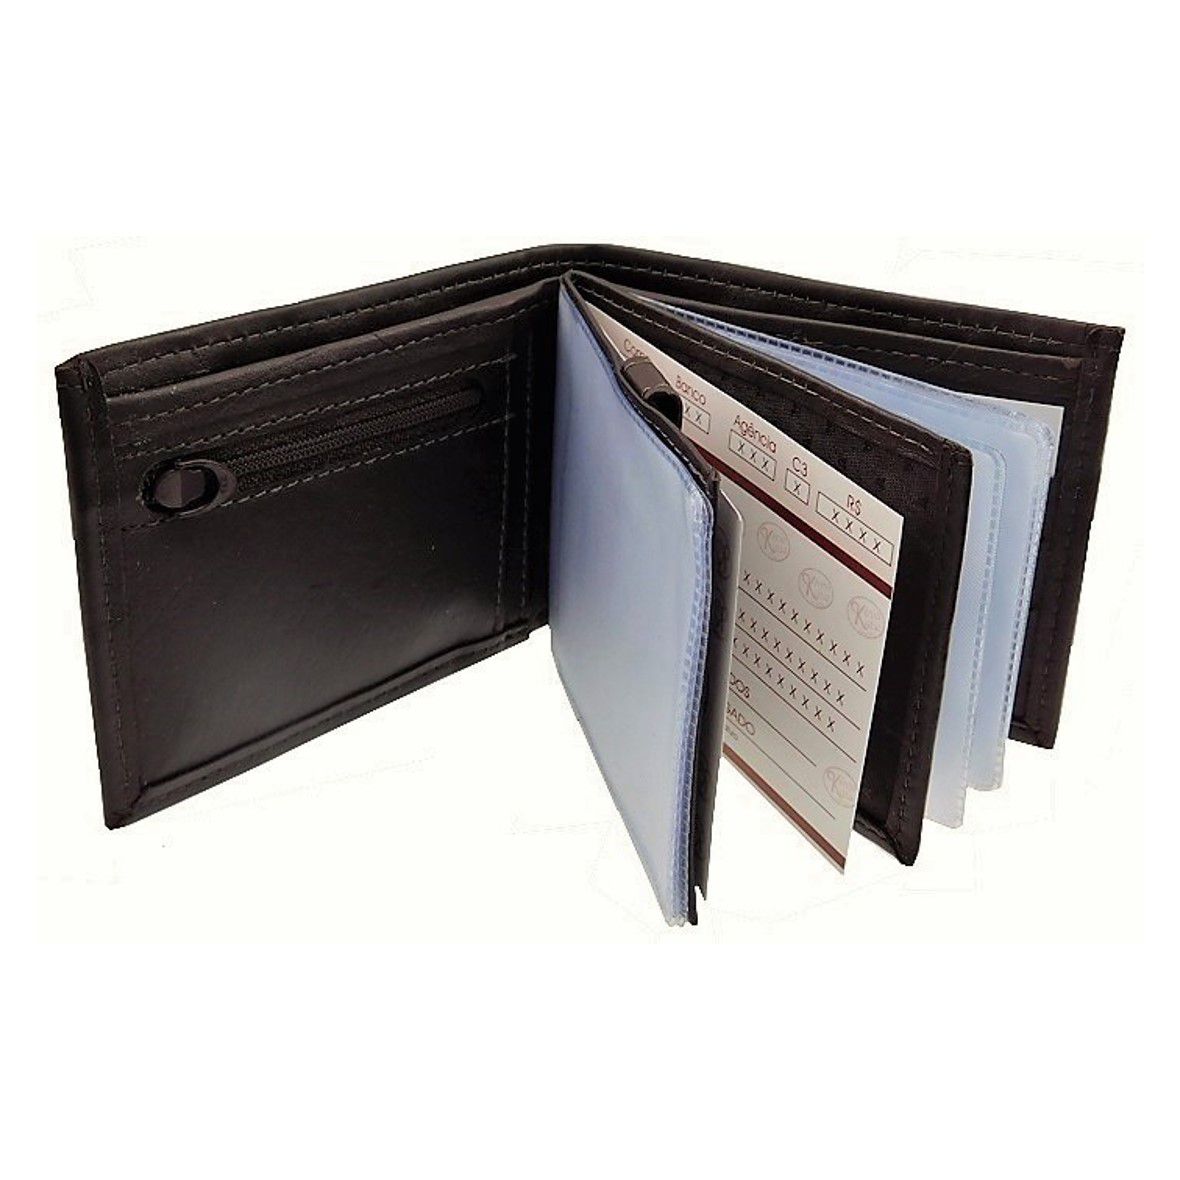 Carteira 12 - Masculina de Bolso em Couro (290TN12) Porta Cartão, Cédula, Cheque, Divisória de Notas, Níquel, RG